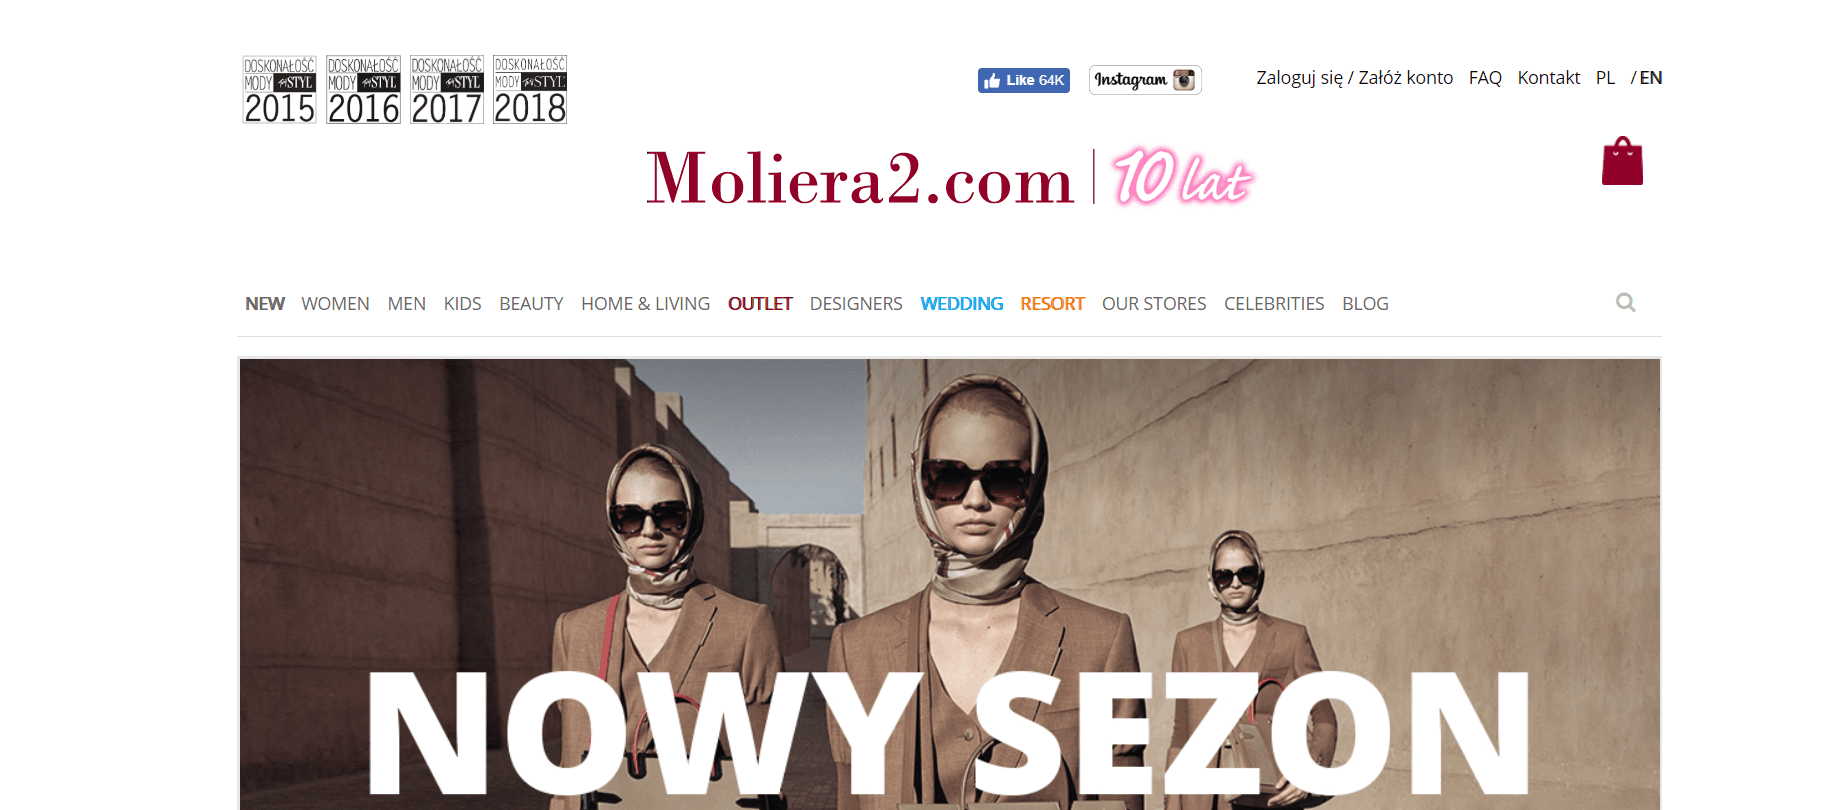 Moliera2 купить онлайн с доставкой в Украину - Meest Shopping - 2